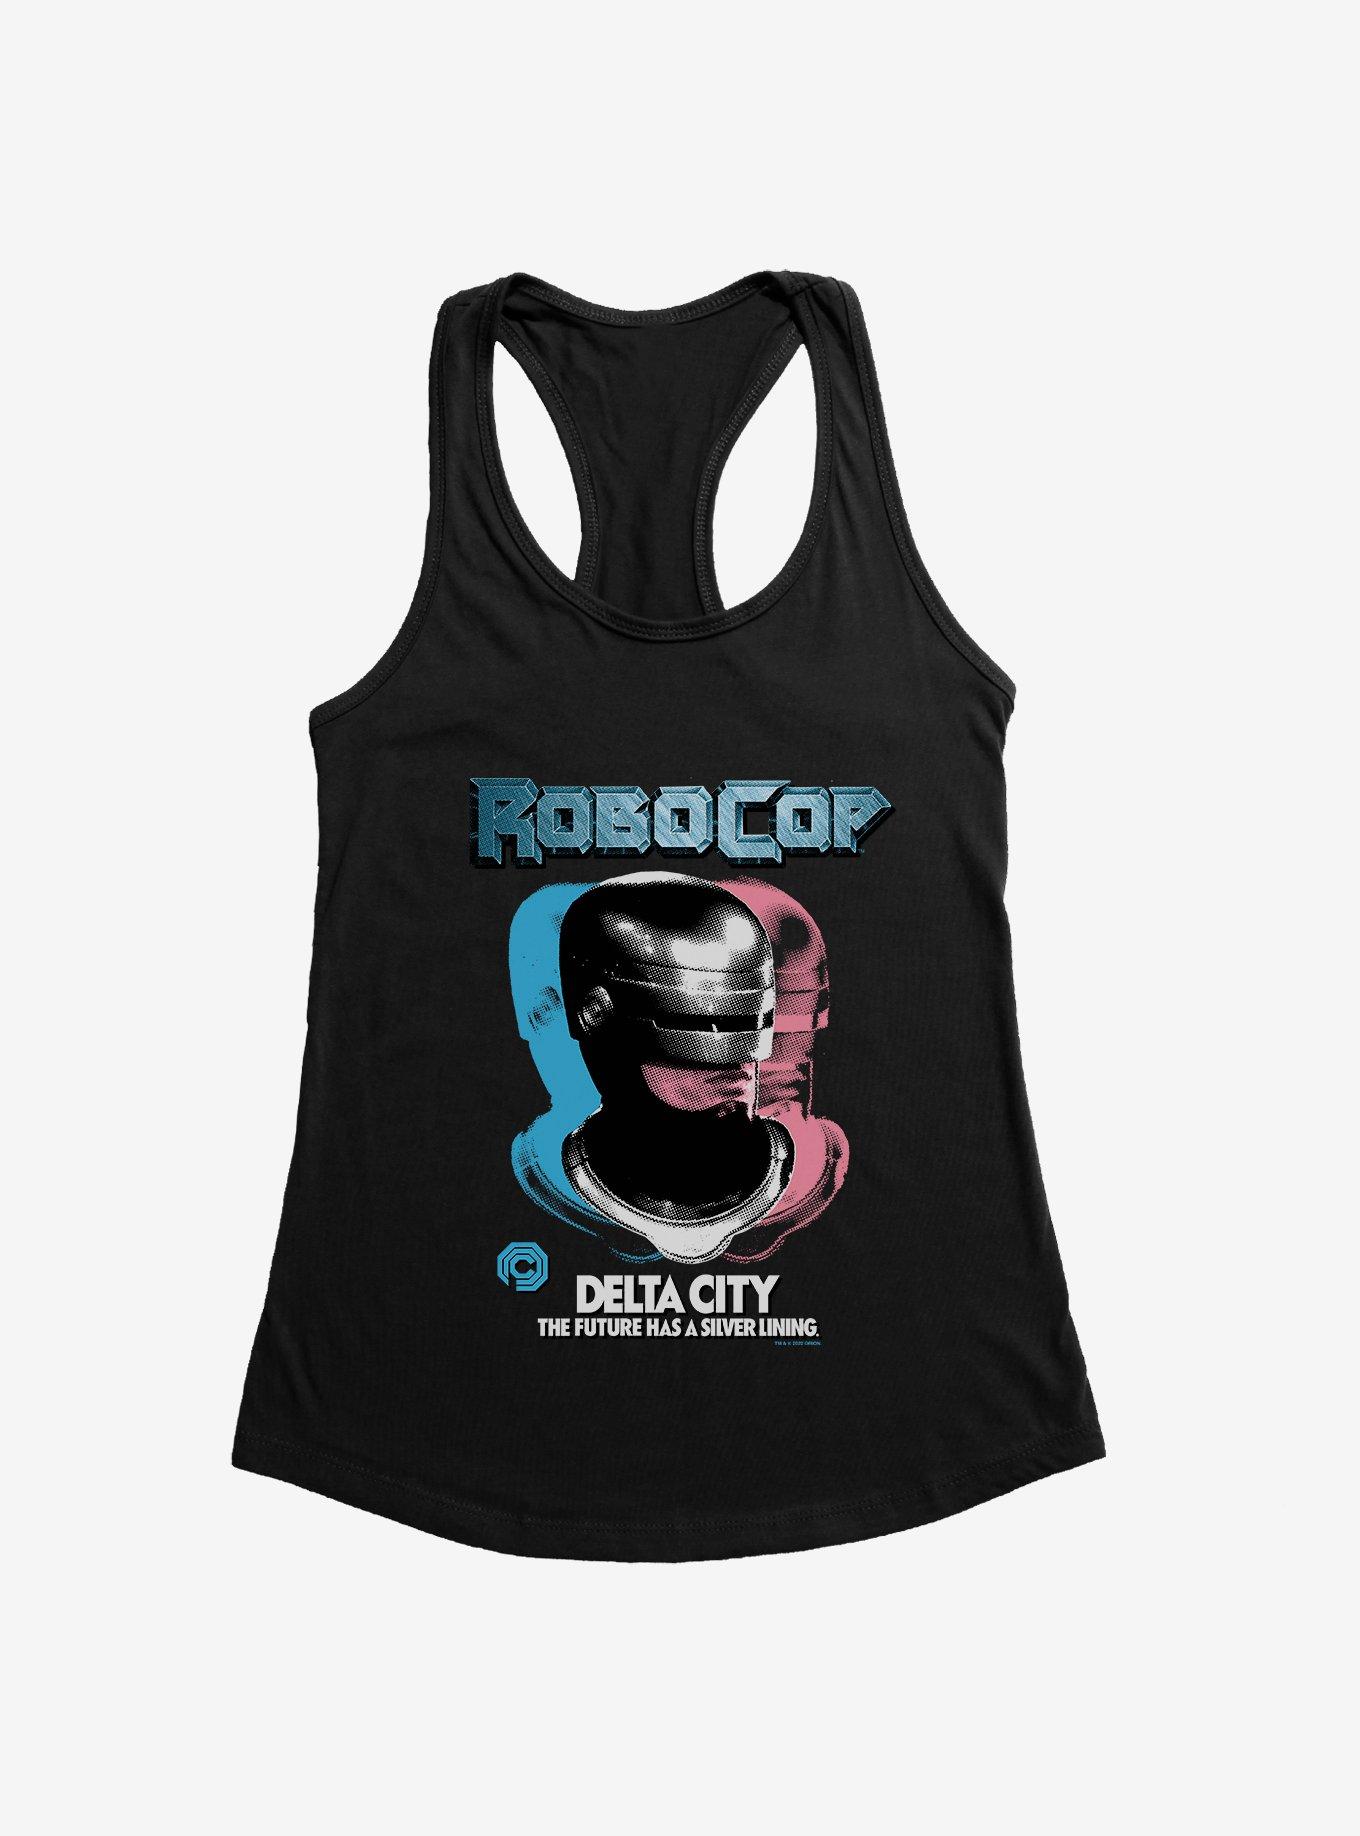 Robocop Delta City: The Future Has A Silver Lining Womens Tank Top, BLACK, hi-res